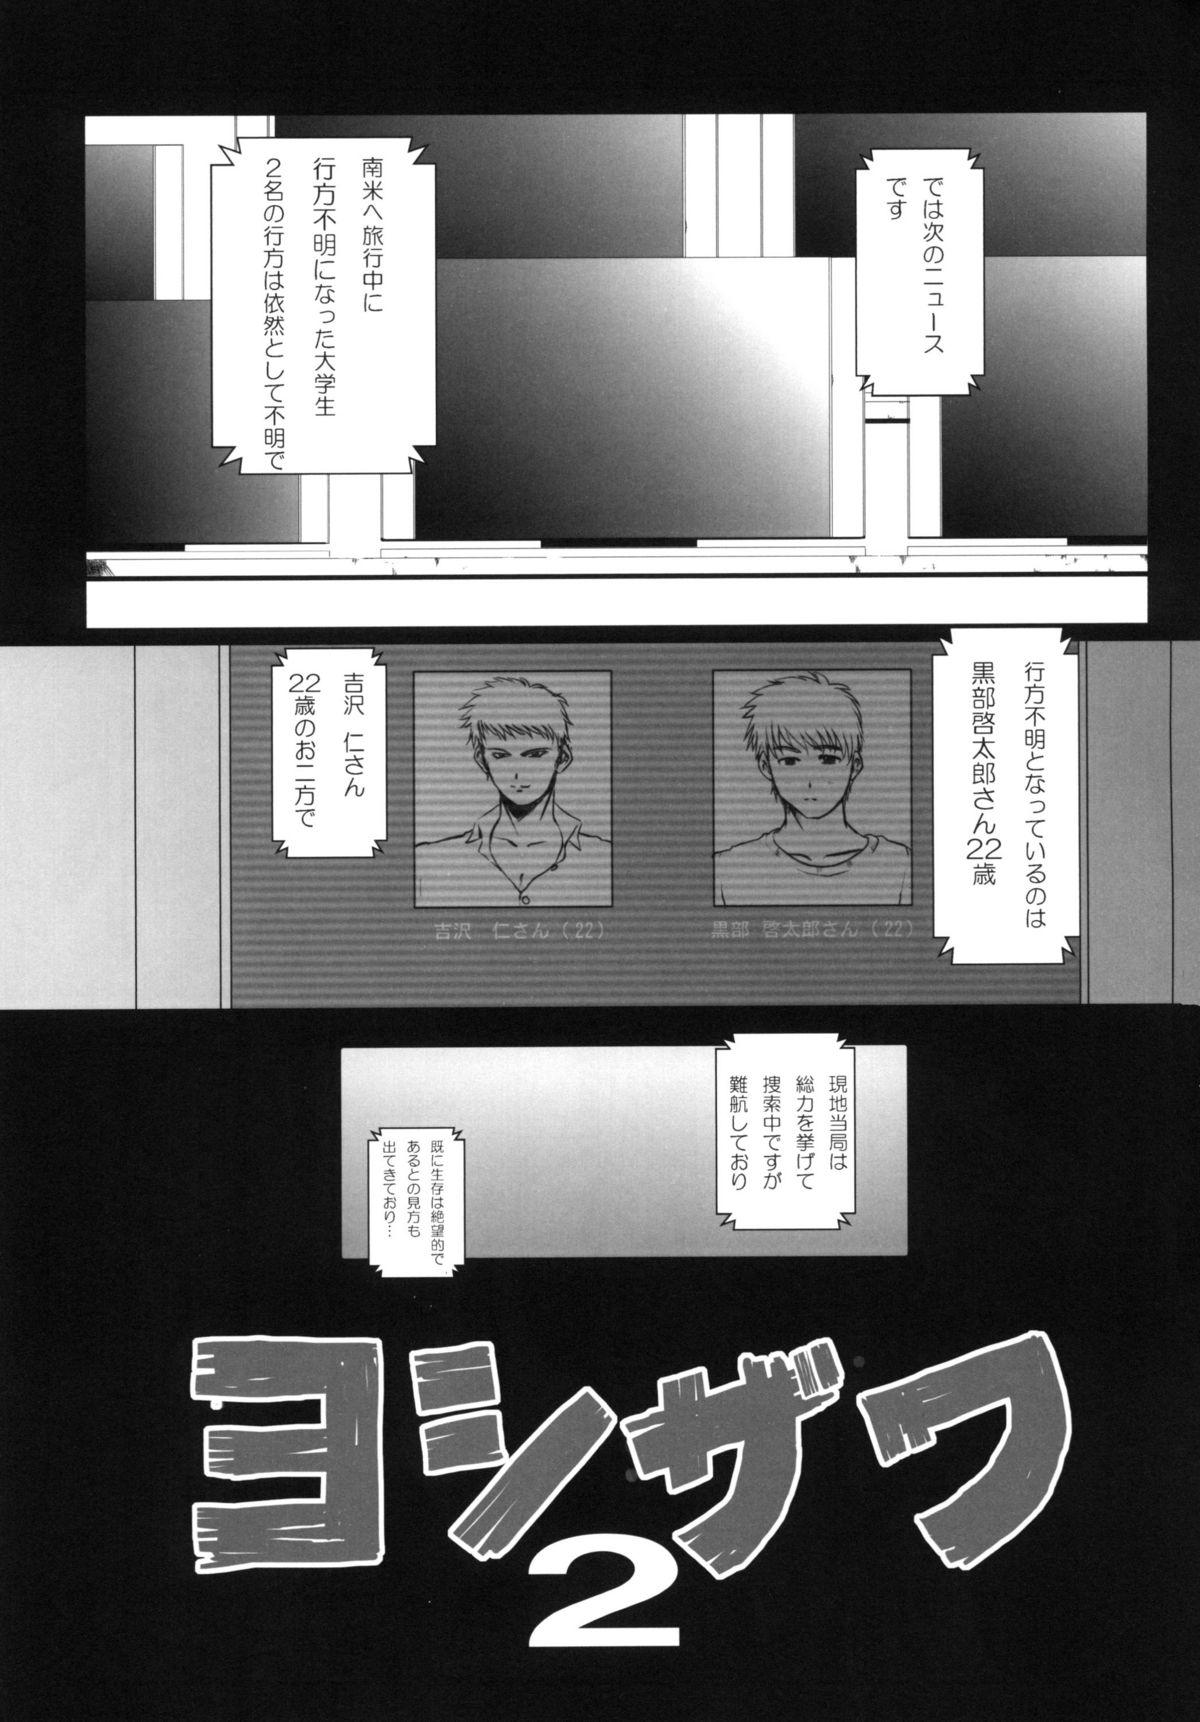 Full Movie Yoshizawa 2 Jizz - Page 3